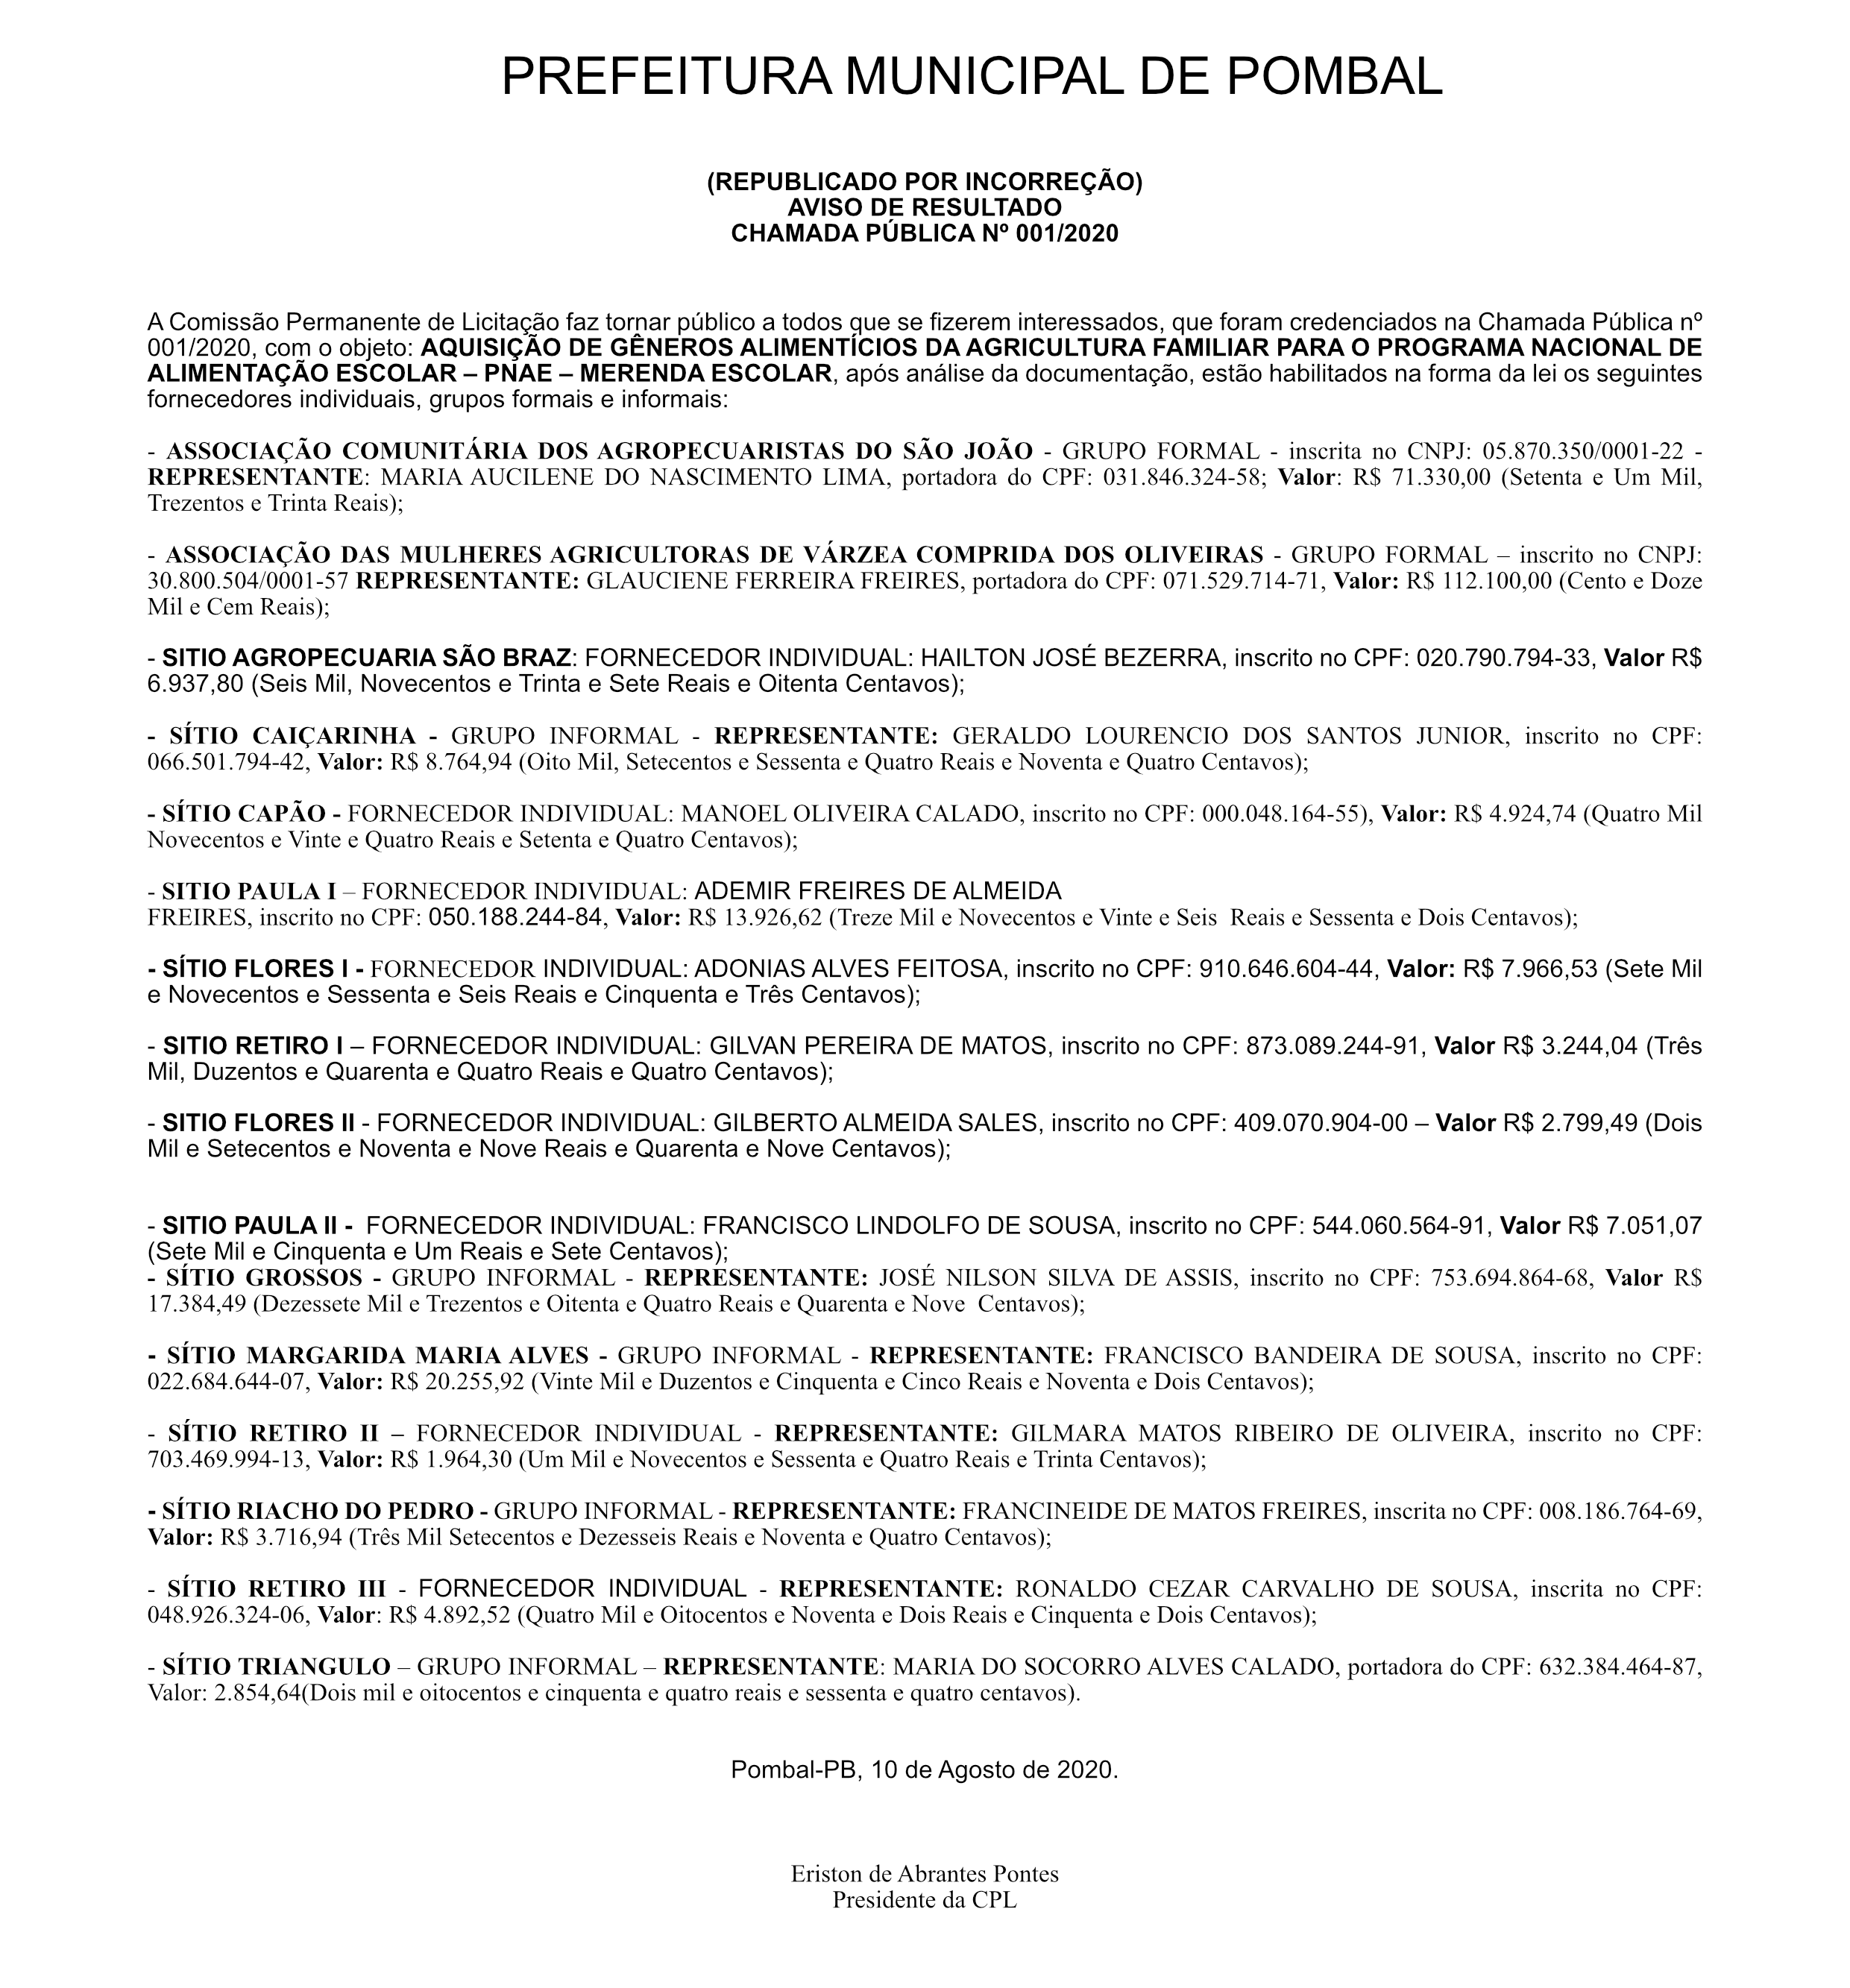 PREFEITURA DE POMBAL – AVISO DE RESULTADO – CHAMADA PÚBLICA Nº 001/2020